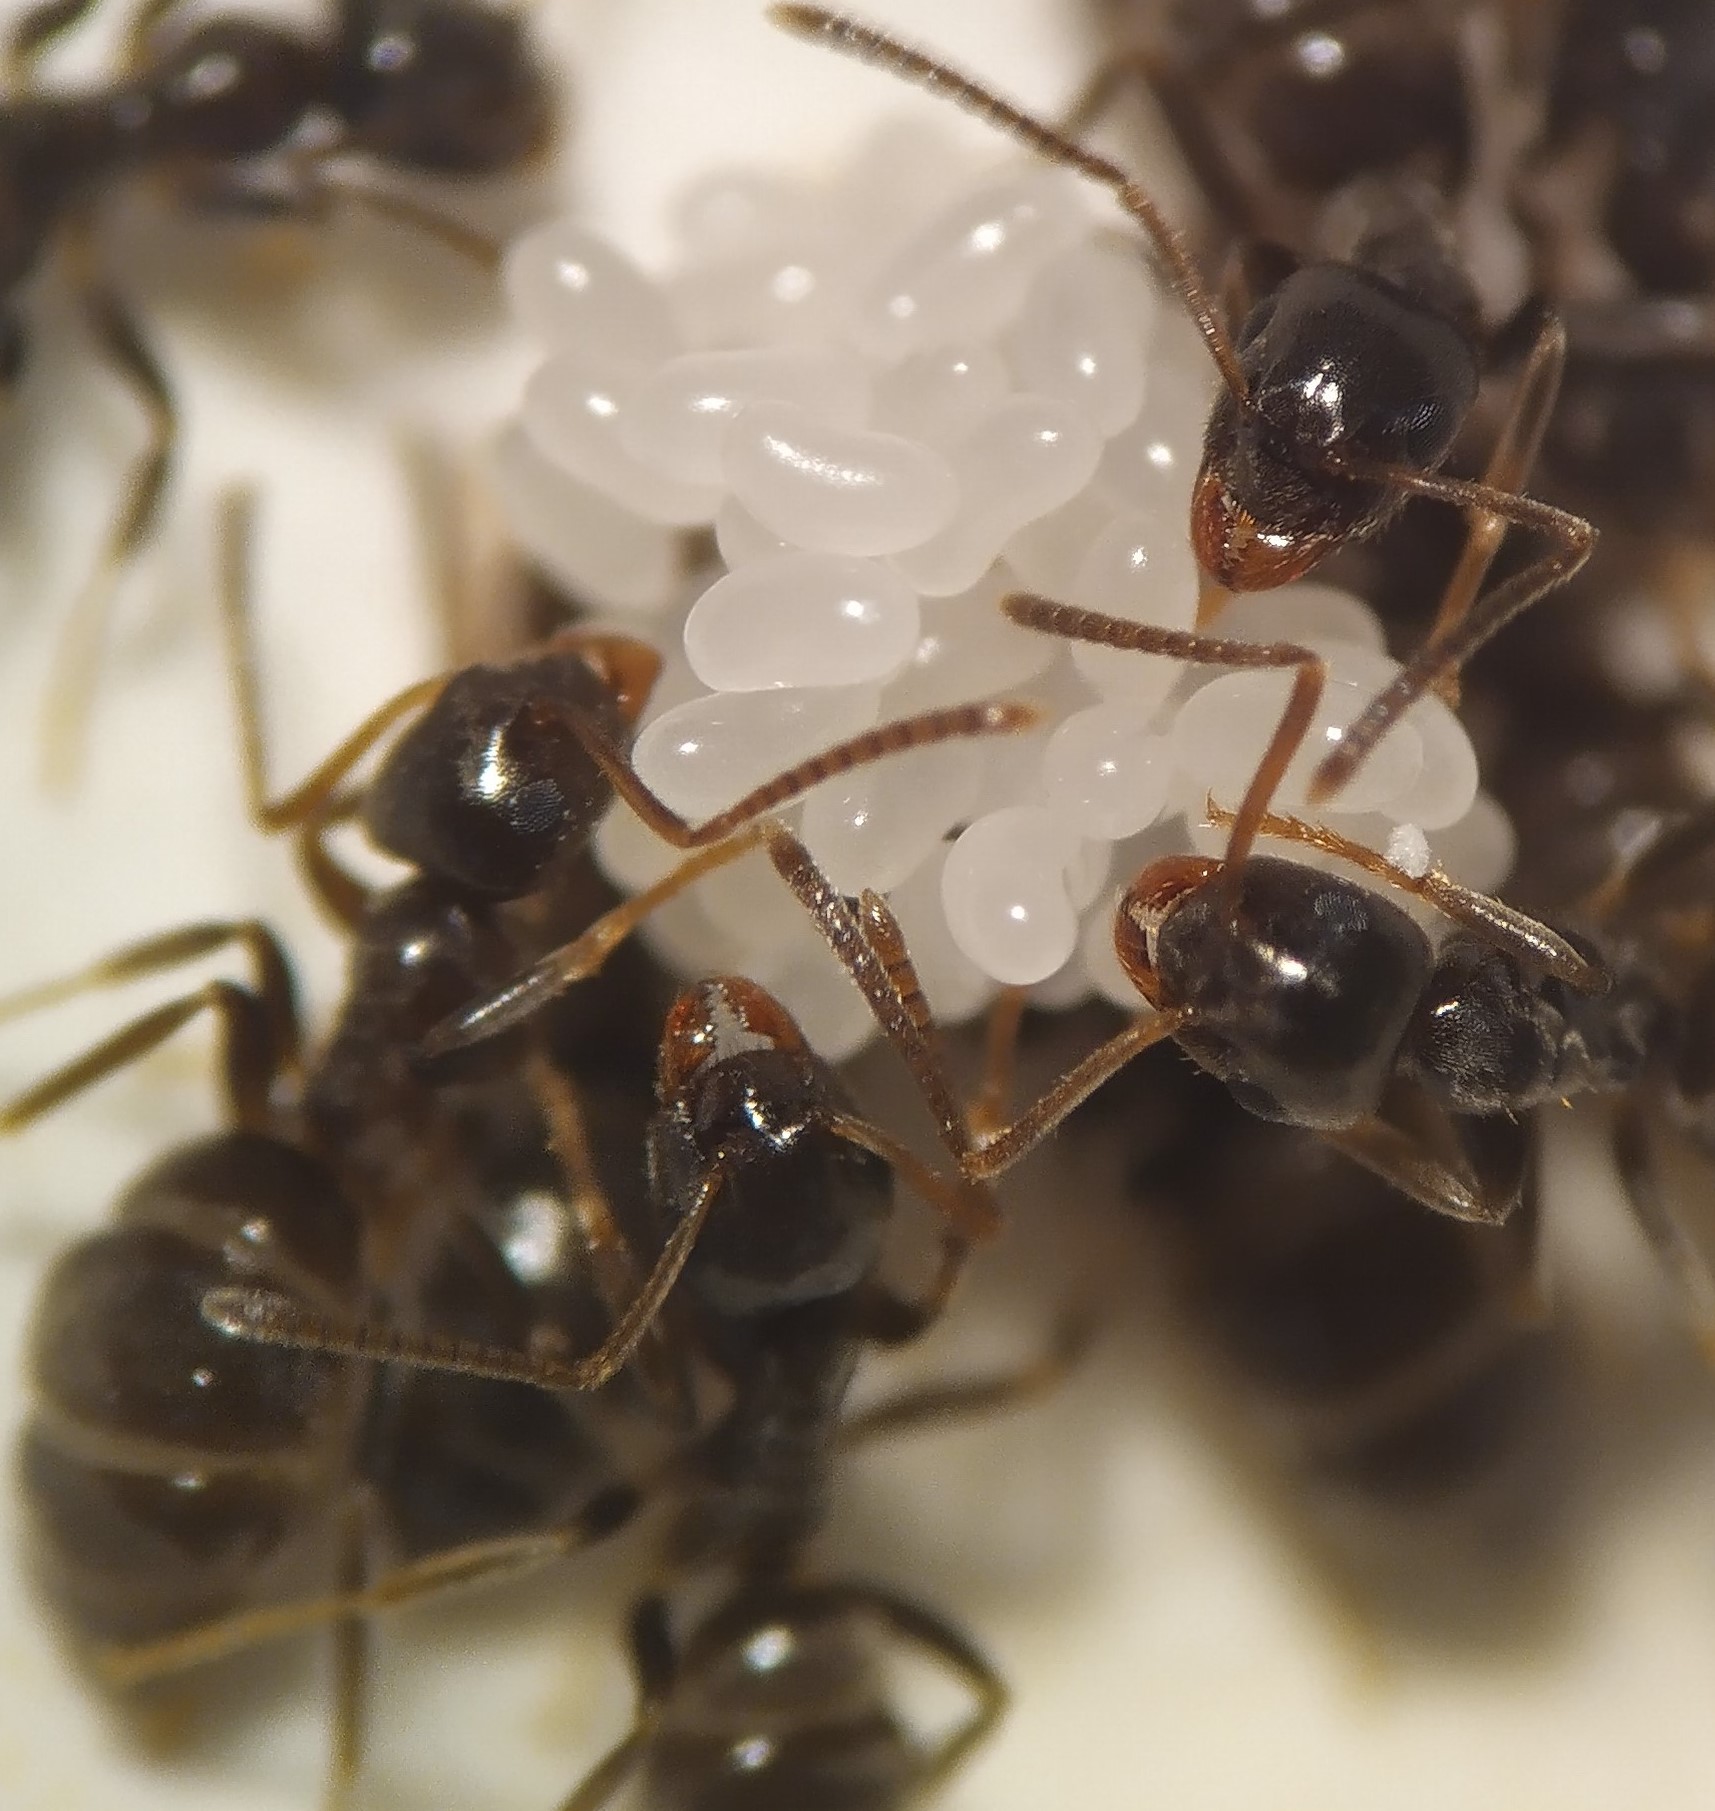 Neljä mustaa muurahaista ovat kerääntyneet valkoisten, pienten munien ympärillä ja osittain niiden päällä.